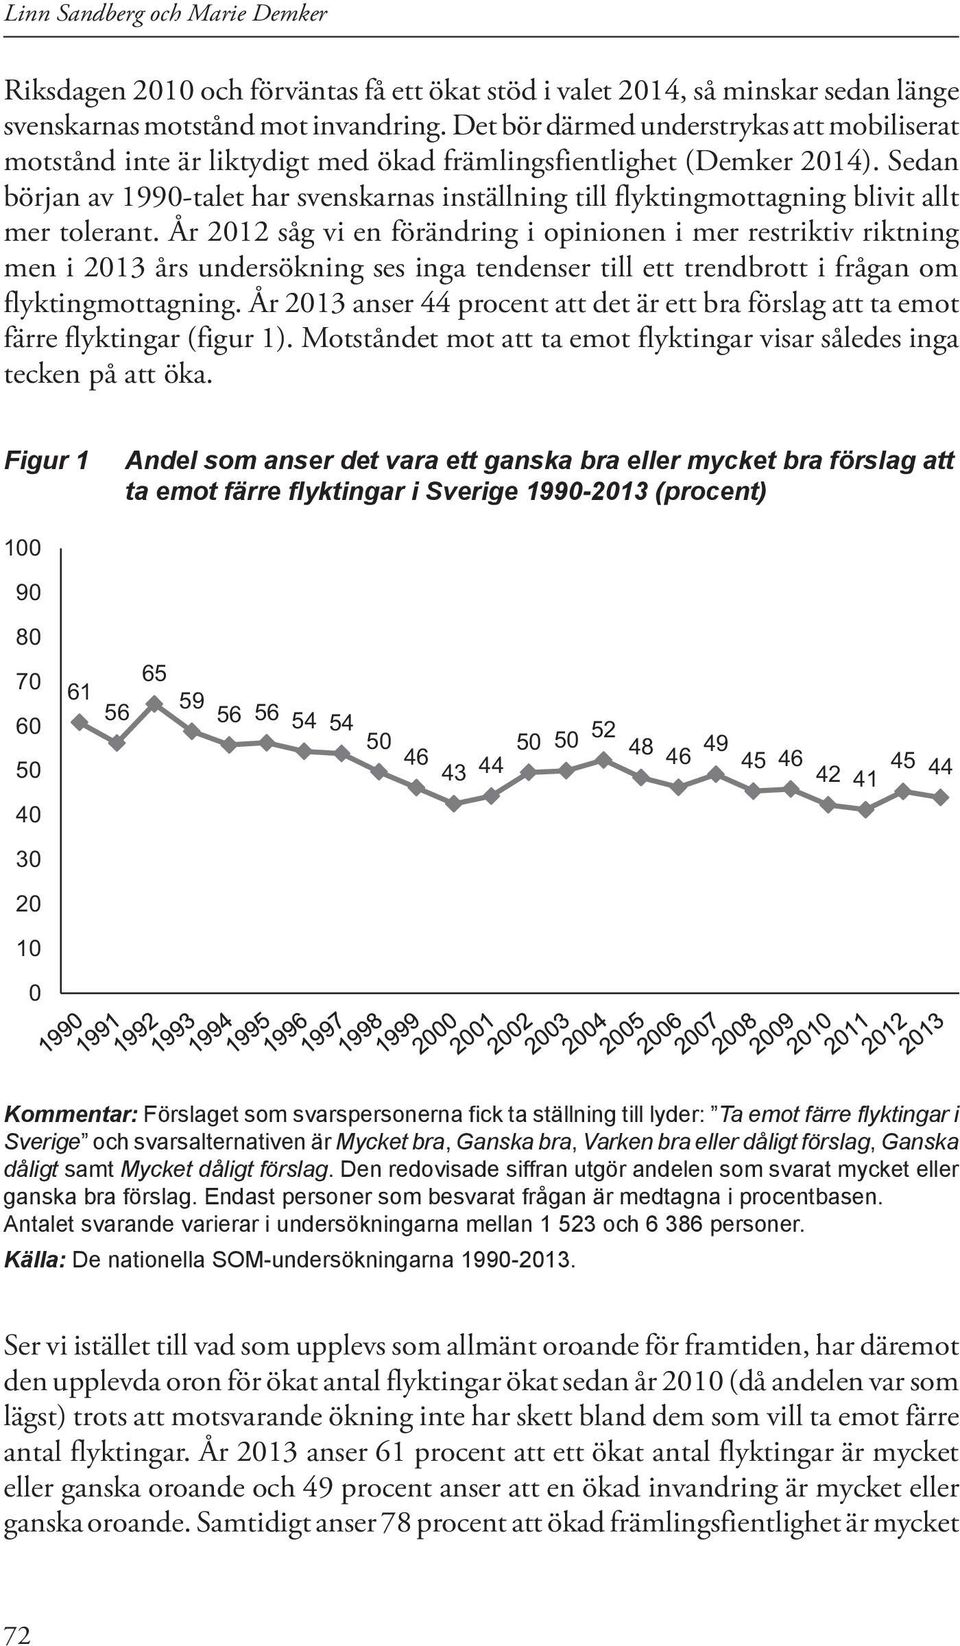 Sedan början av 1990-talet har svenskarnas inställning till flyktingmottagning blivit allt mer tolerant.